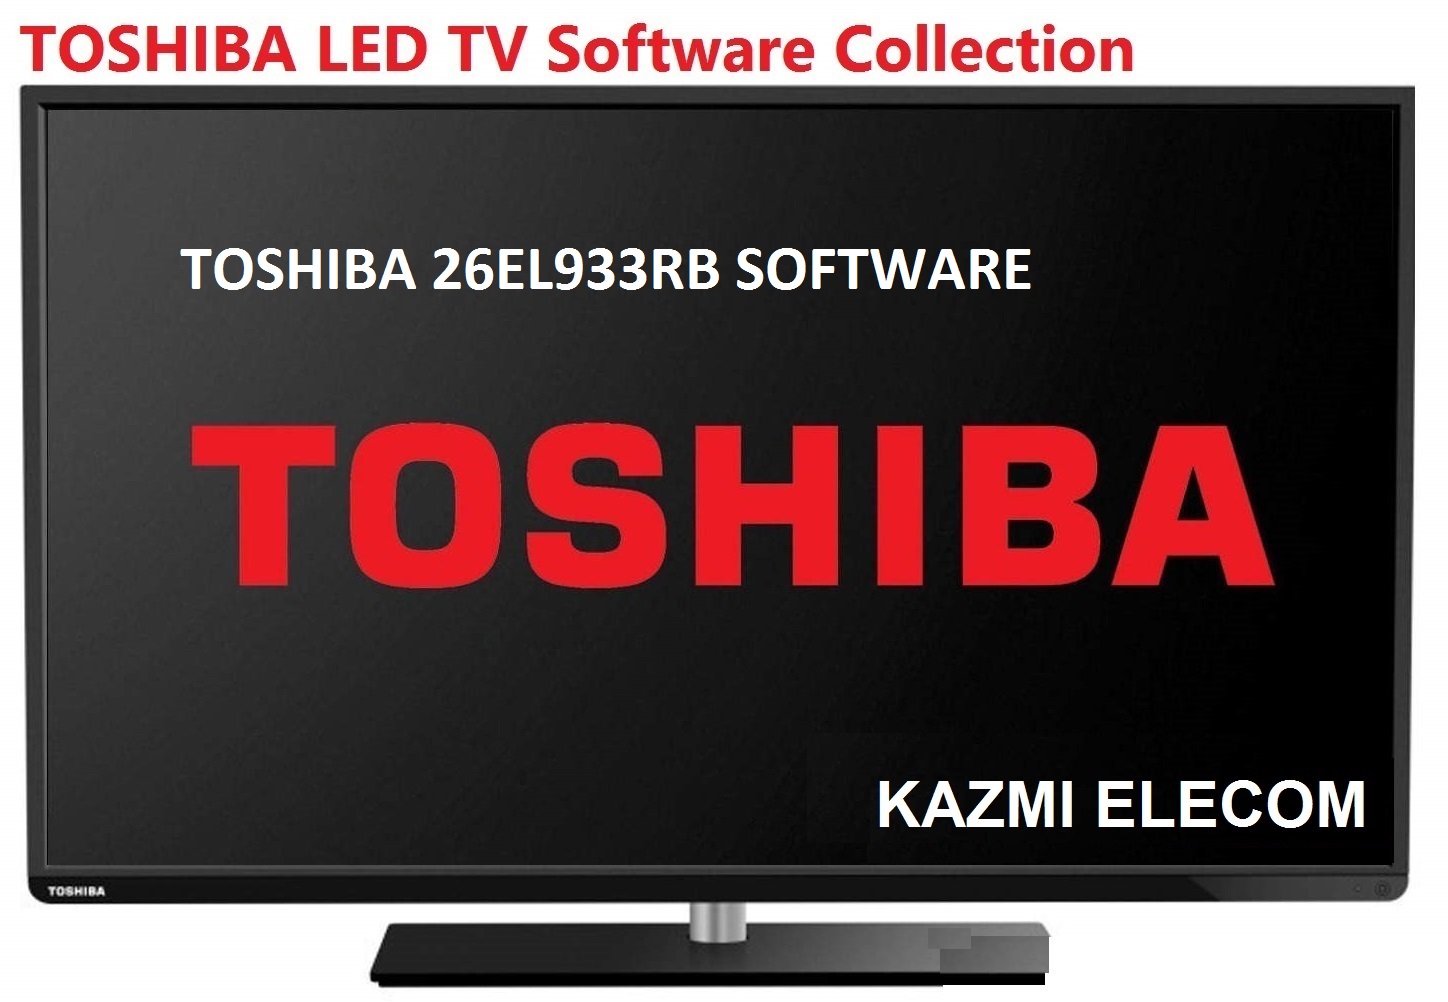 Toshiba 26El933Rb